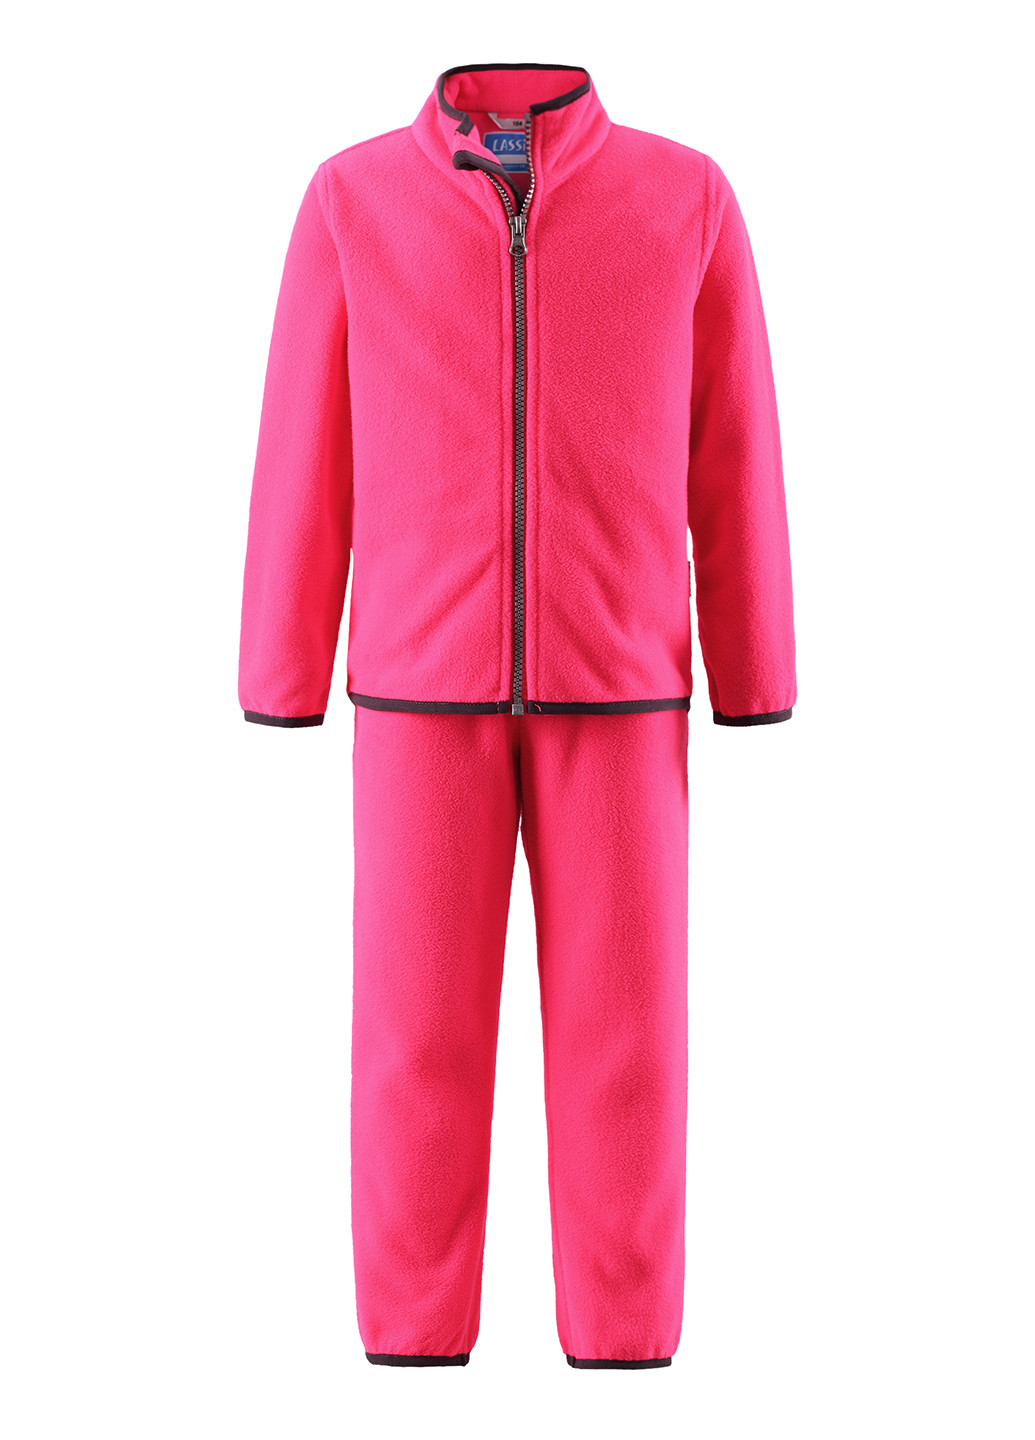 Розовый демисезонный костюм (кофта, брюки) брючный Lassie by Reima